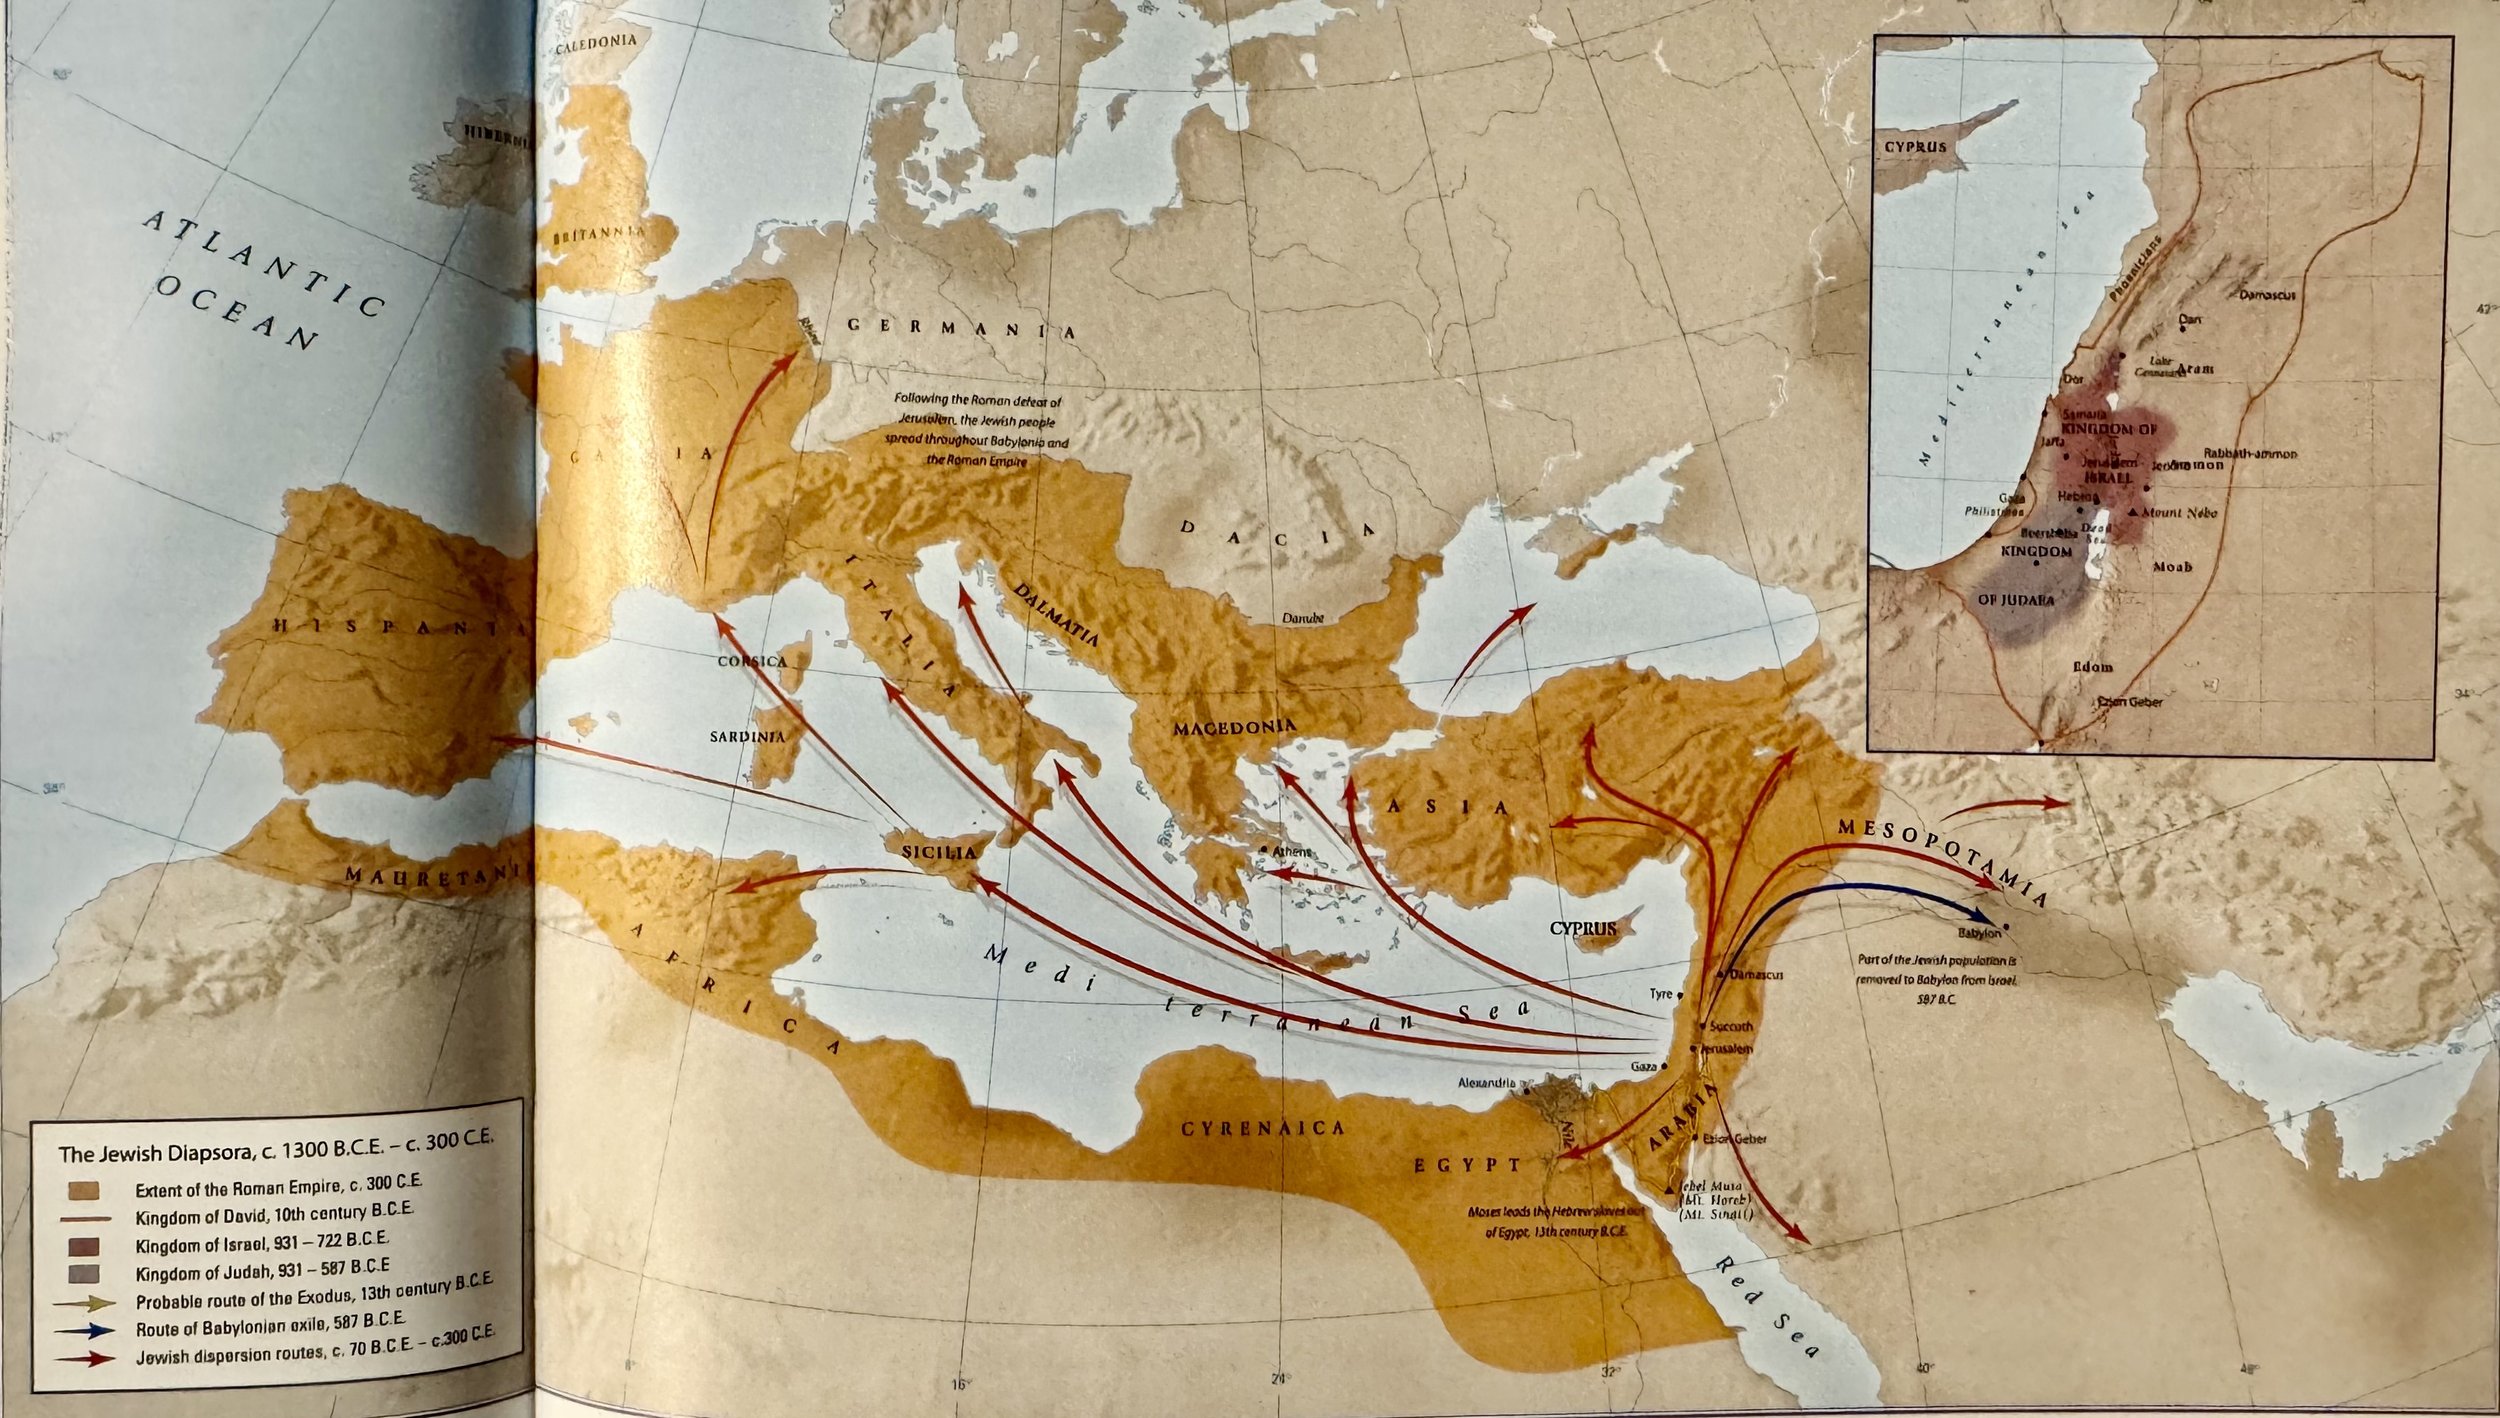 1300 BCE-300 Jewish Diaspora Atlas of the Bible.jpeg